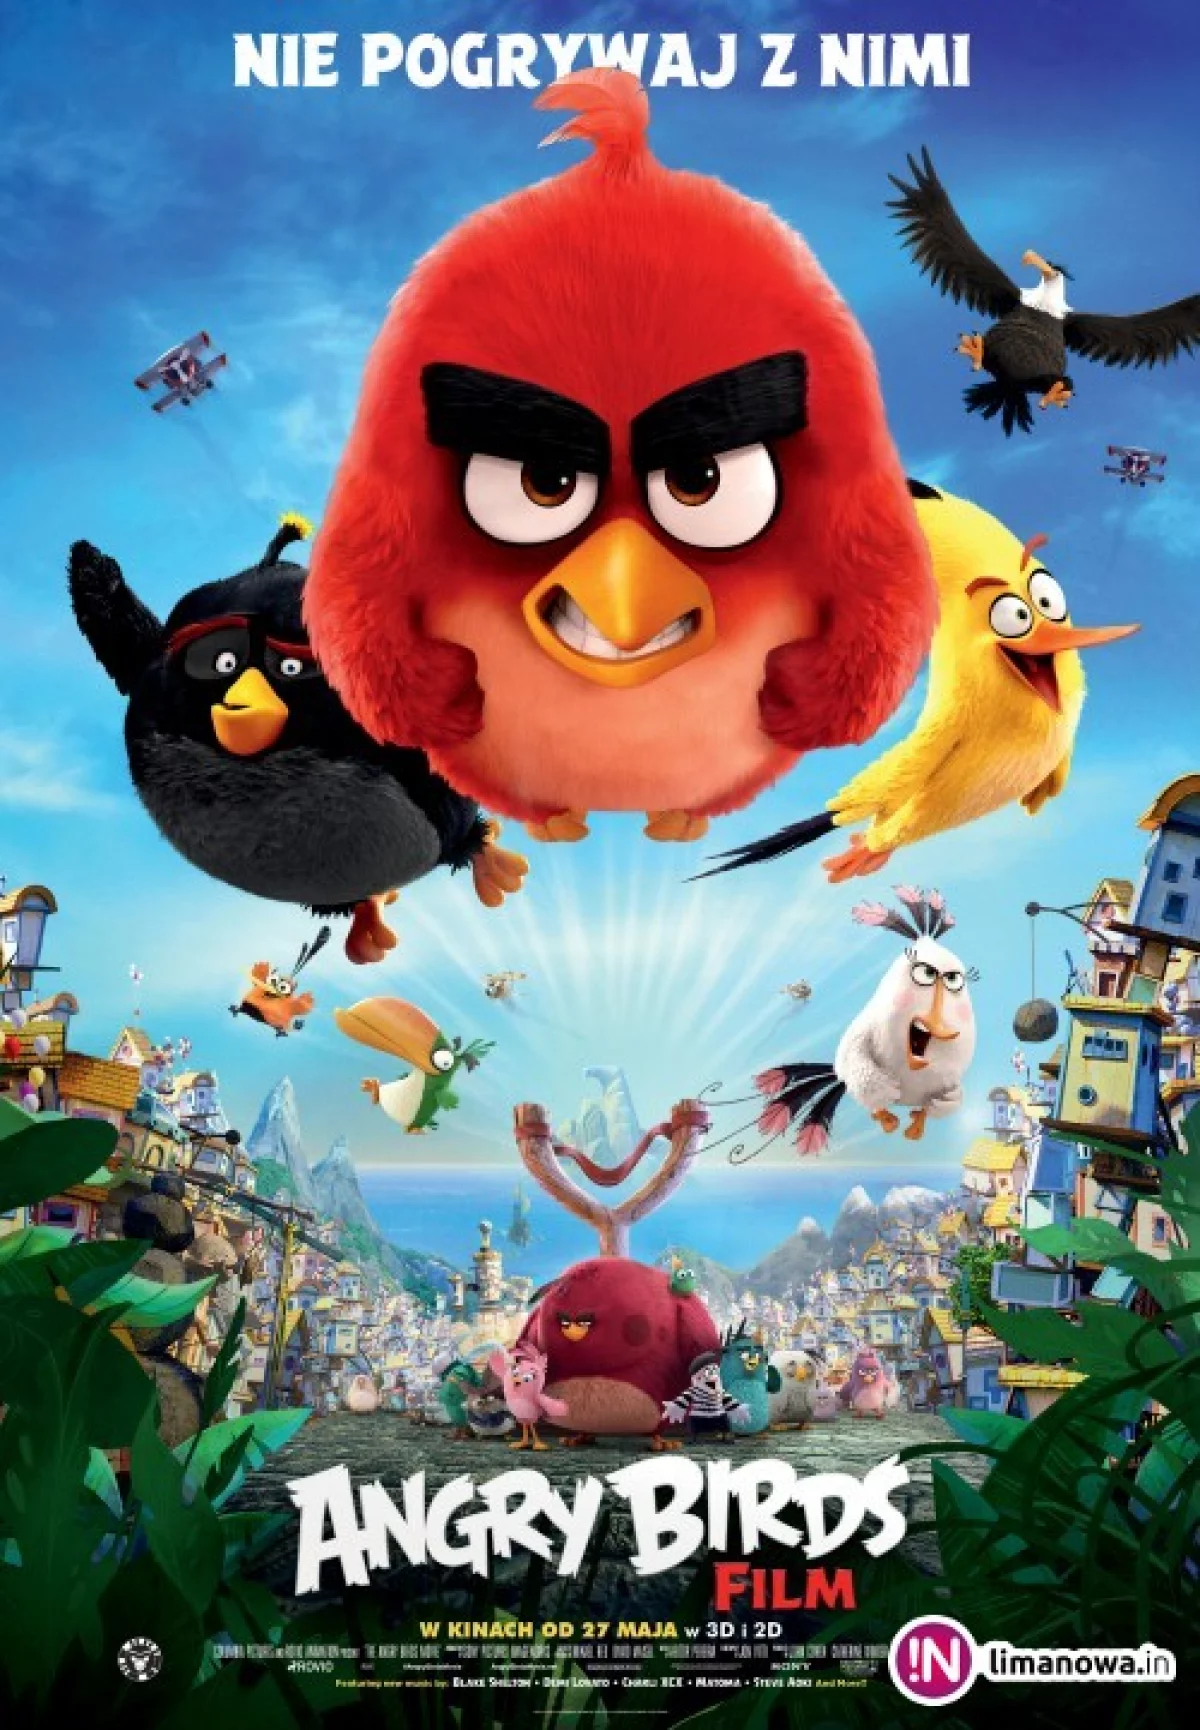 Premiera w kinie Klaps - „Angry Birds Film” na ekranie od 27 maja!